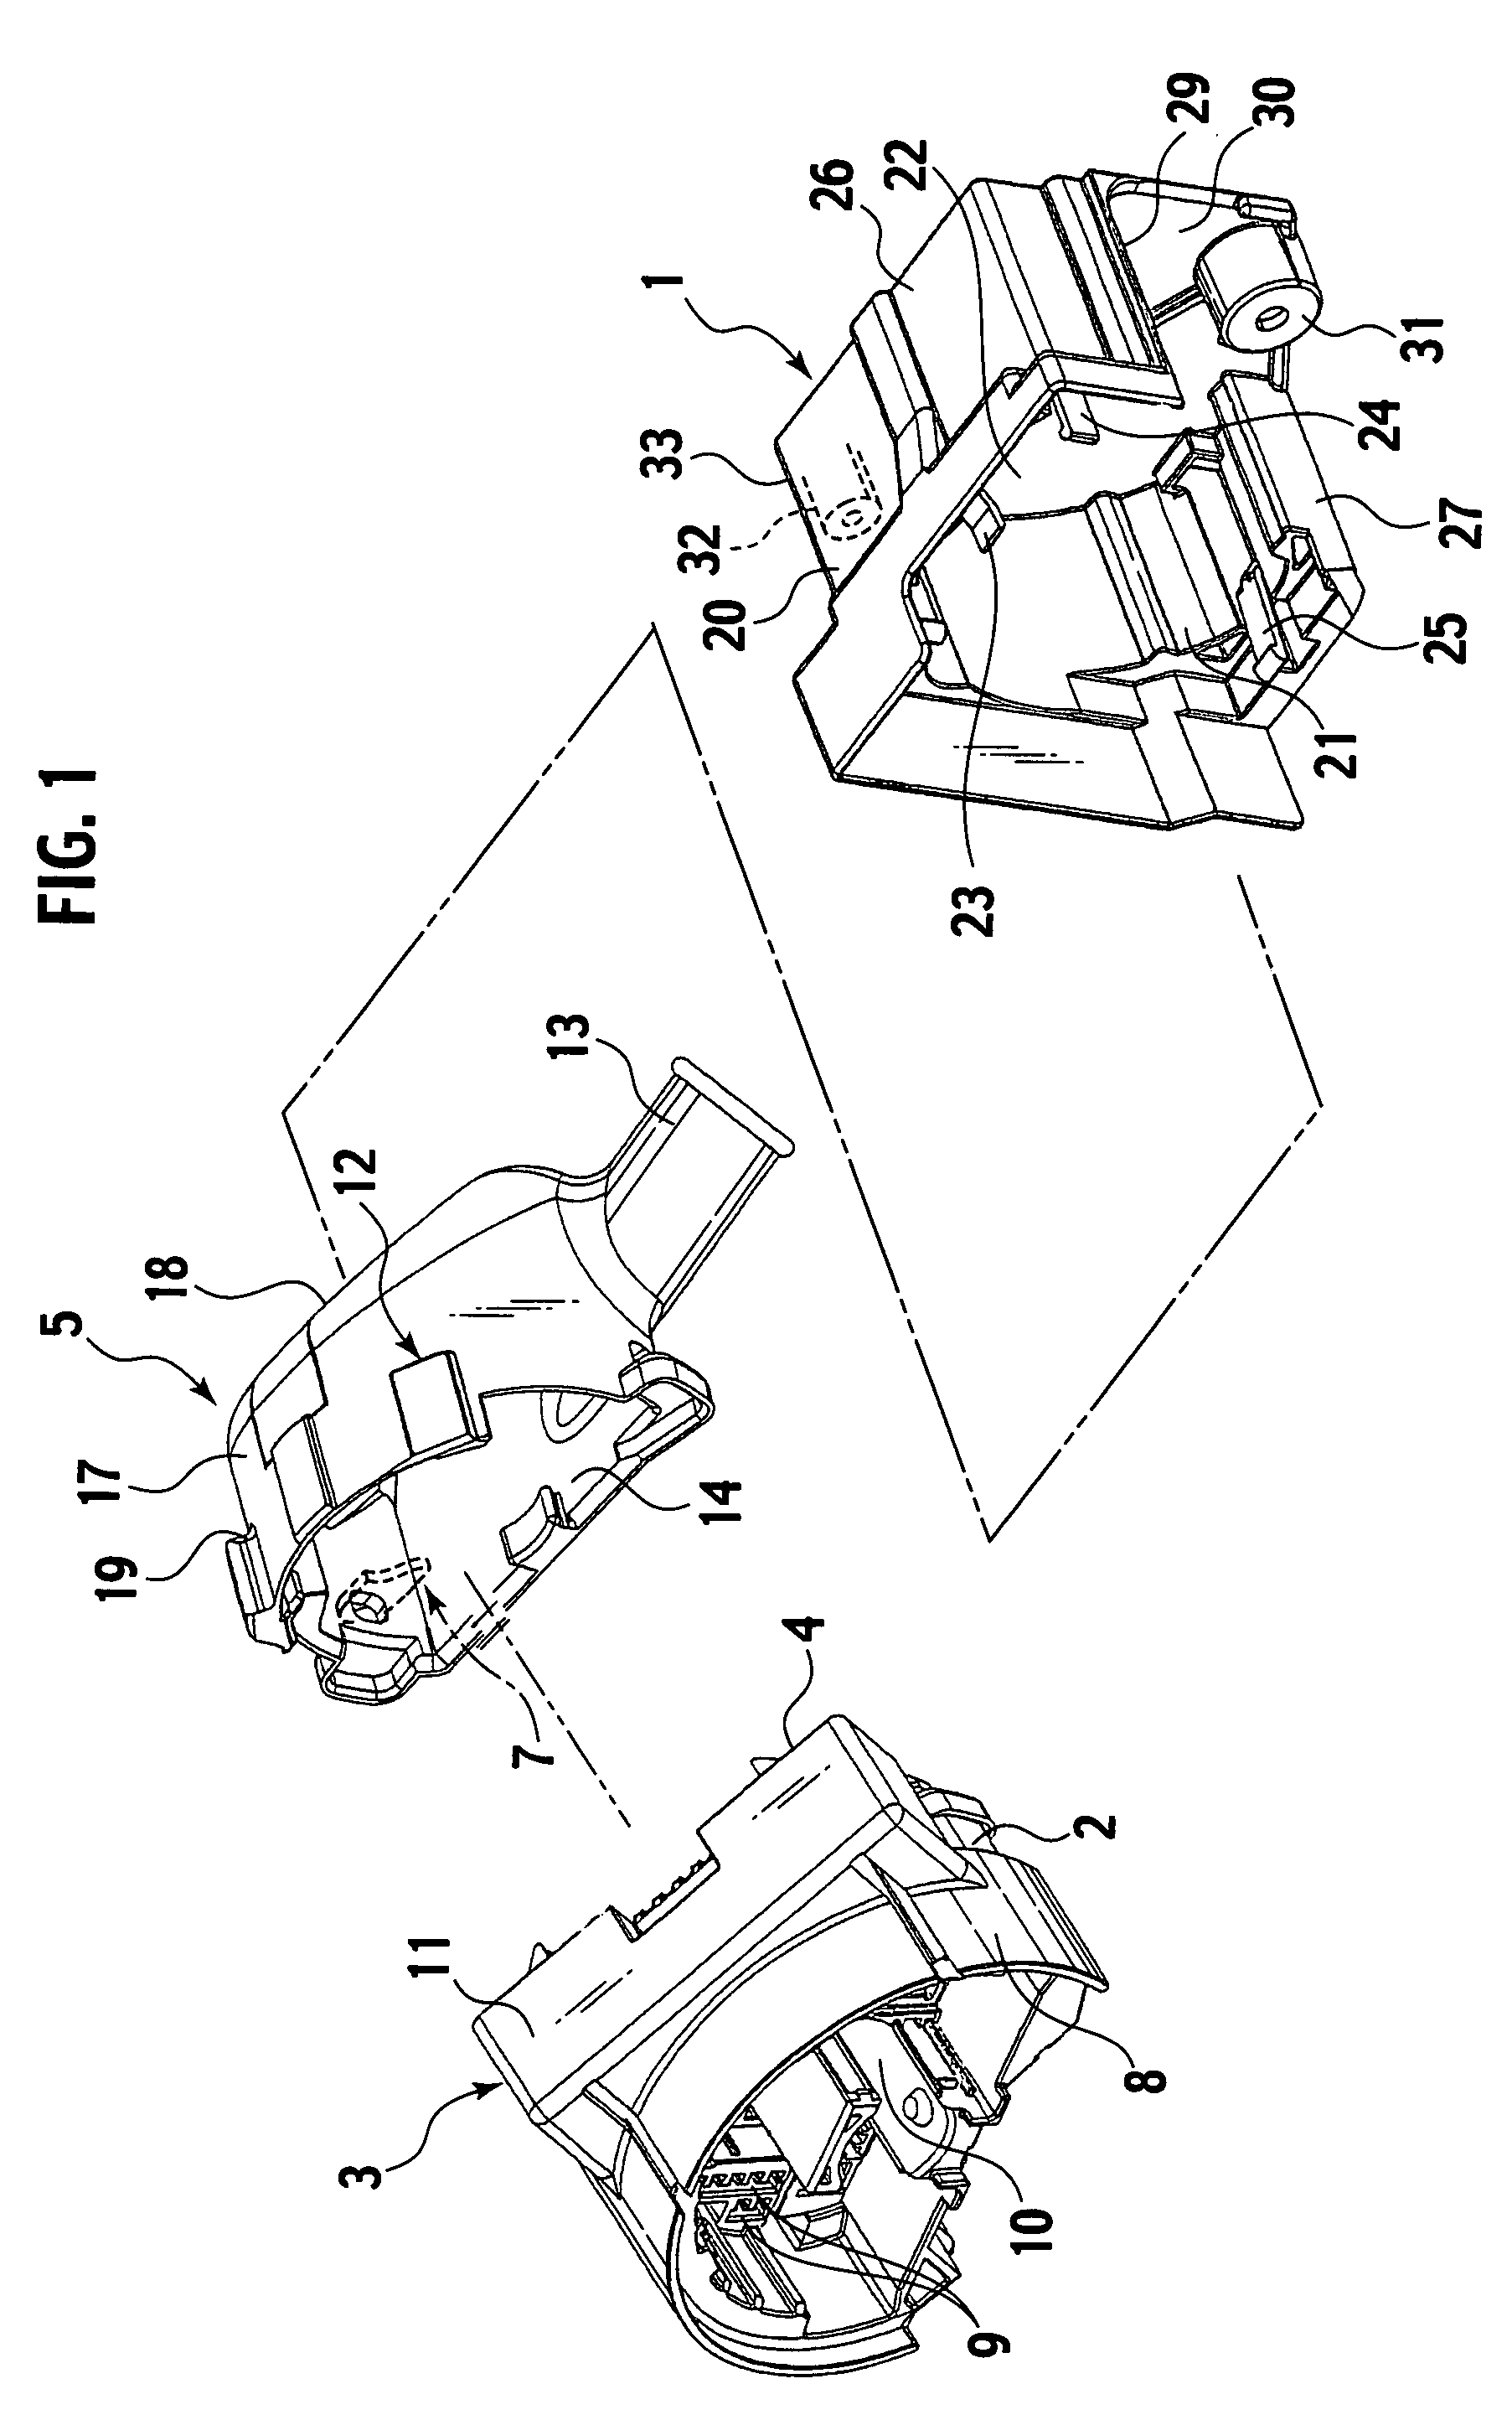 Rear-Cover Attachment Structure